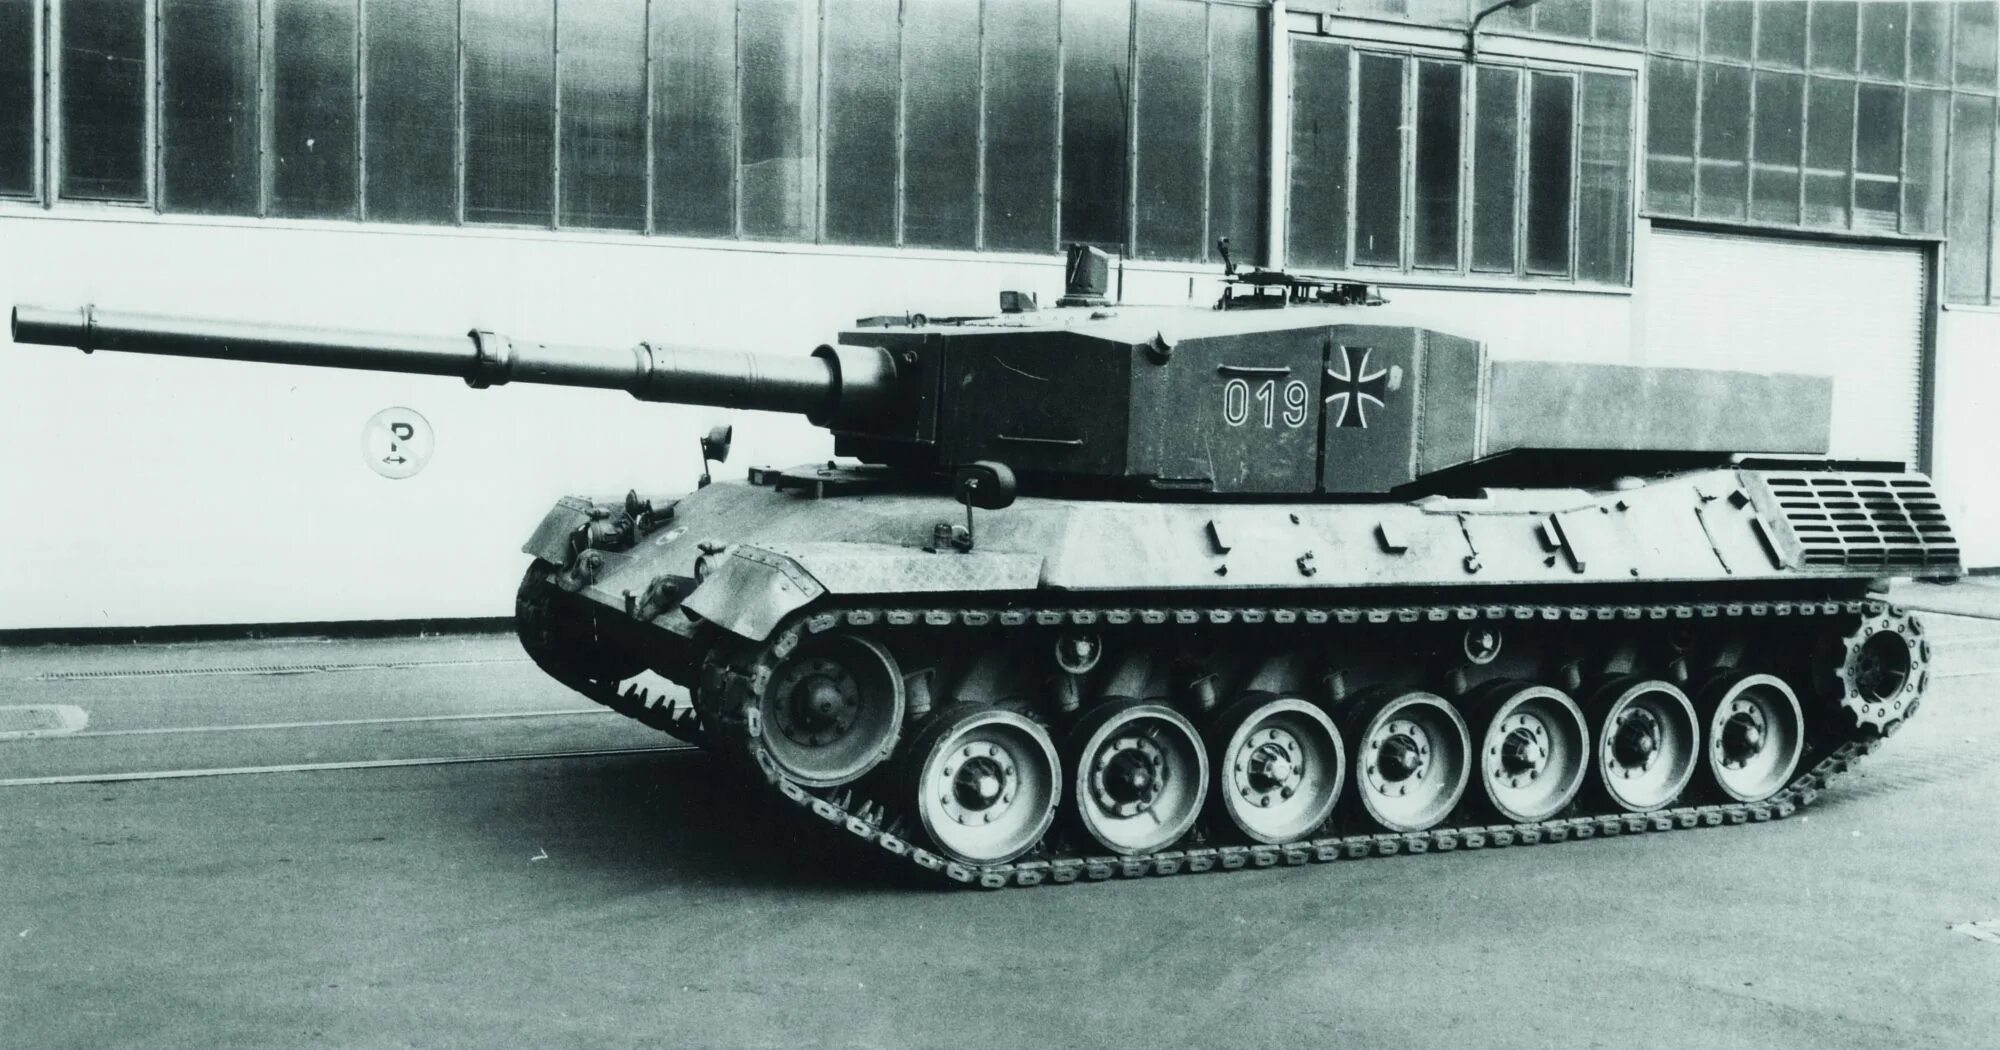 Б м немецкий. Leopard 2av, pt-19/t19-av. Леопард 2av. Pt 16 t14 Leopard. Танк m48 с башней Leopard 2a1.